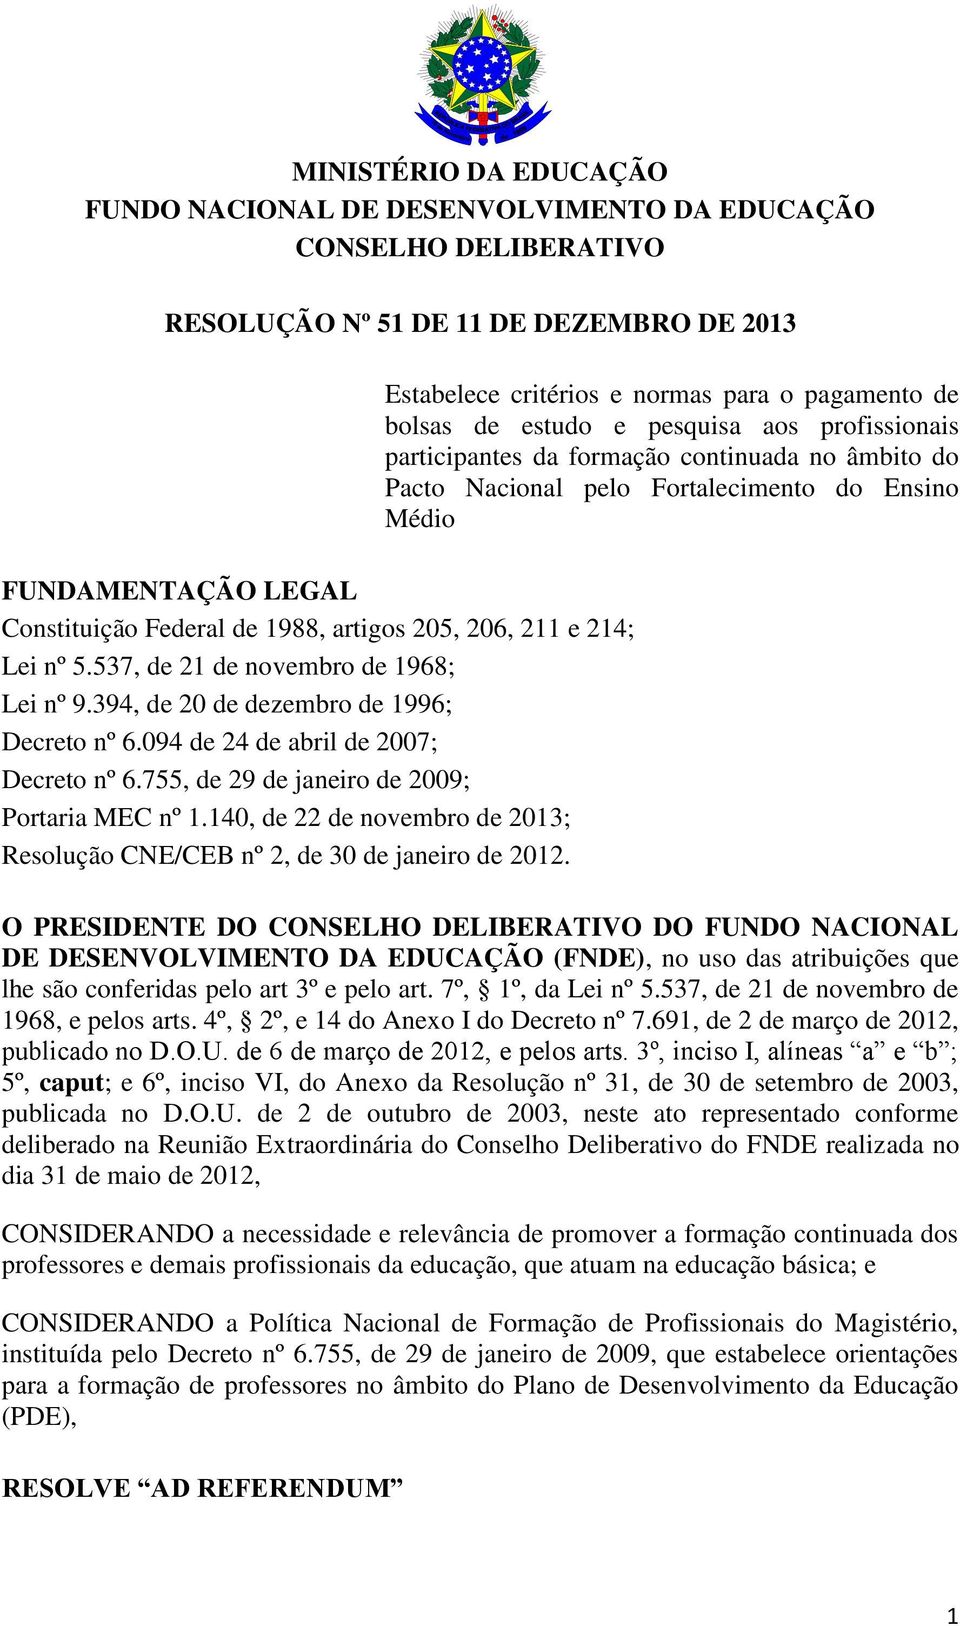 755, de 29 de janeiro de 2009; Portaria MEC nº 1.140, de 22 de novembro de 2013; Resolução CNE/CEB nº 2, de 30 de janeiro de 2012.